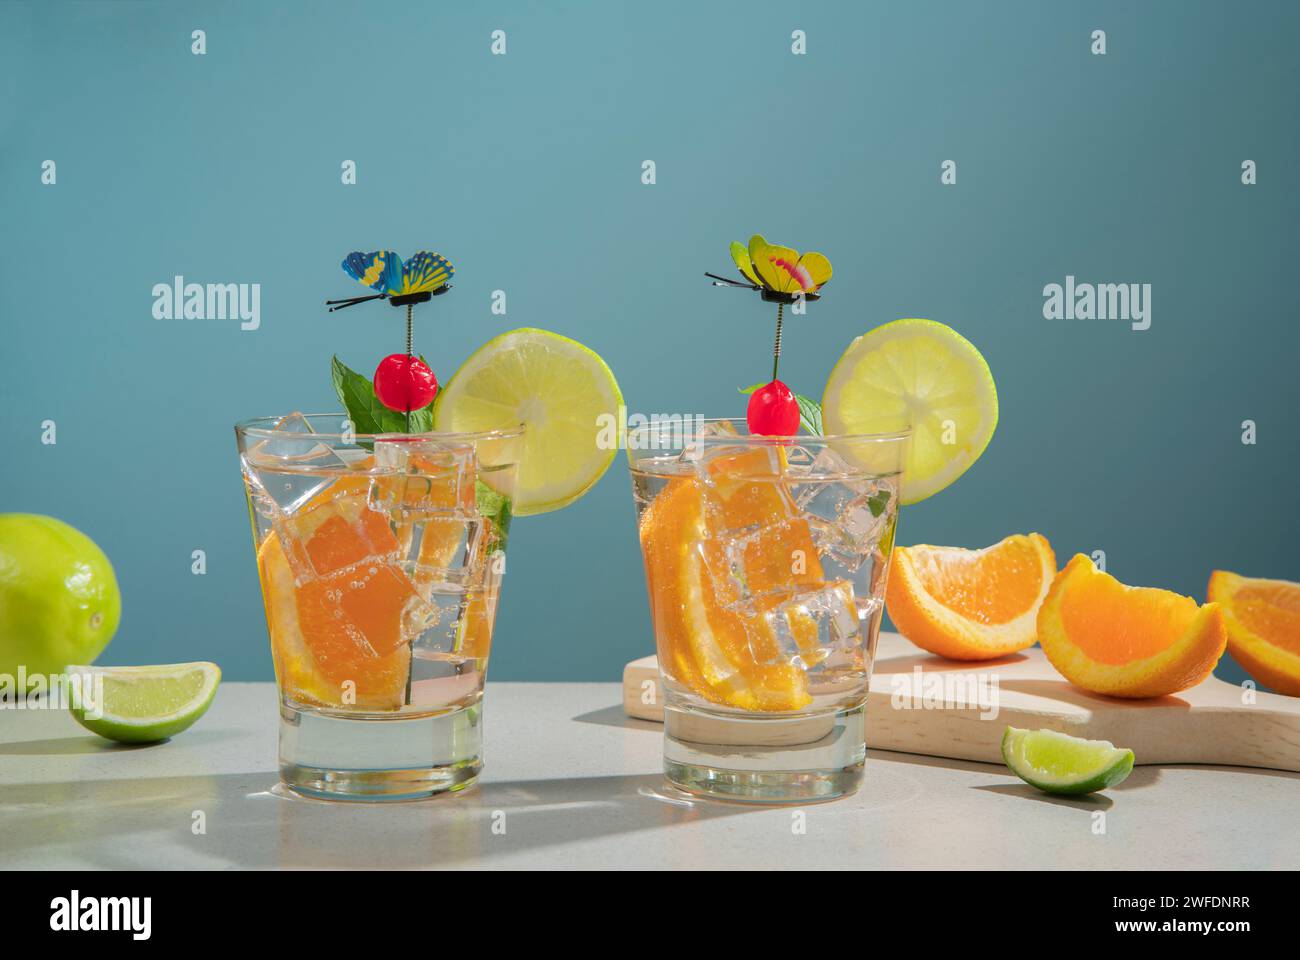 Dos cócteles en vaso de vidrio rellenos de hielo y rebanada de naranja adornada con rodaja de limón, cereza y alfiler de mariposa sobre una mesa blanca con trozos de ora Foto de stock